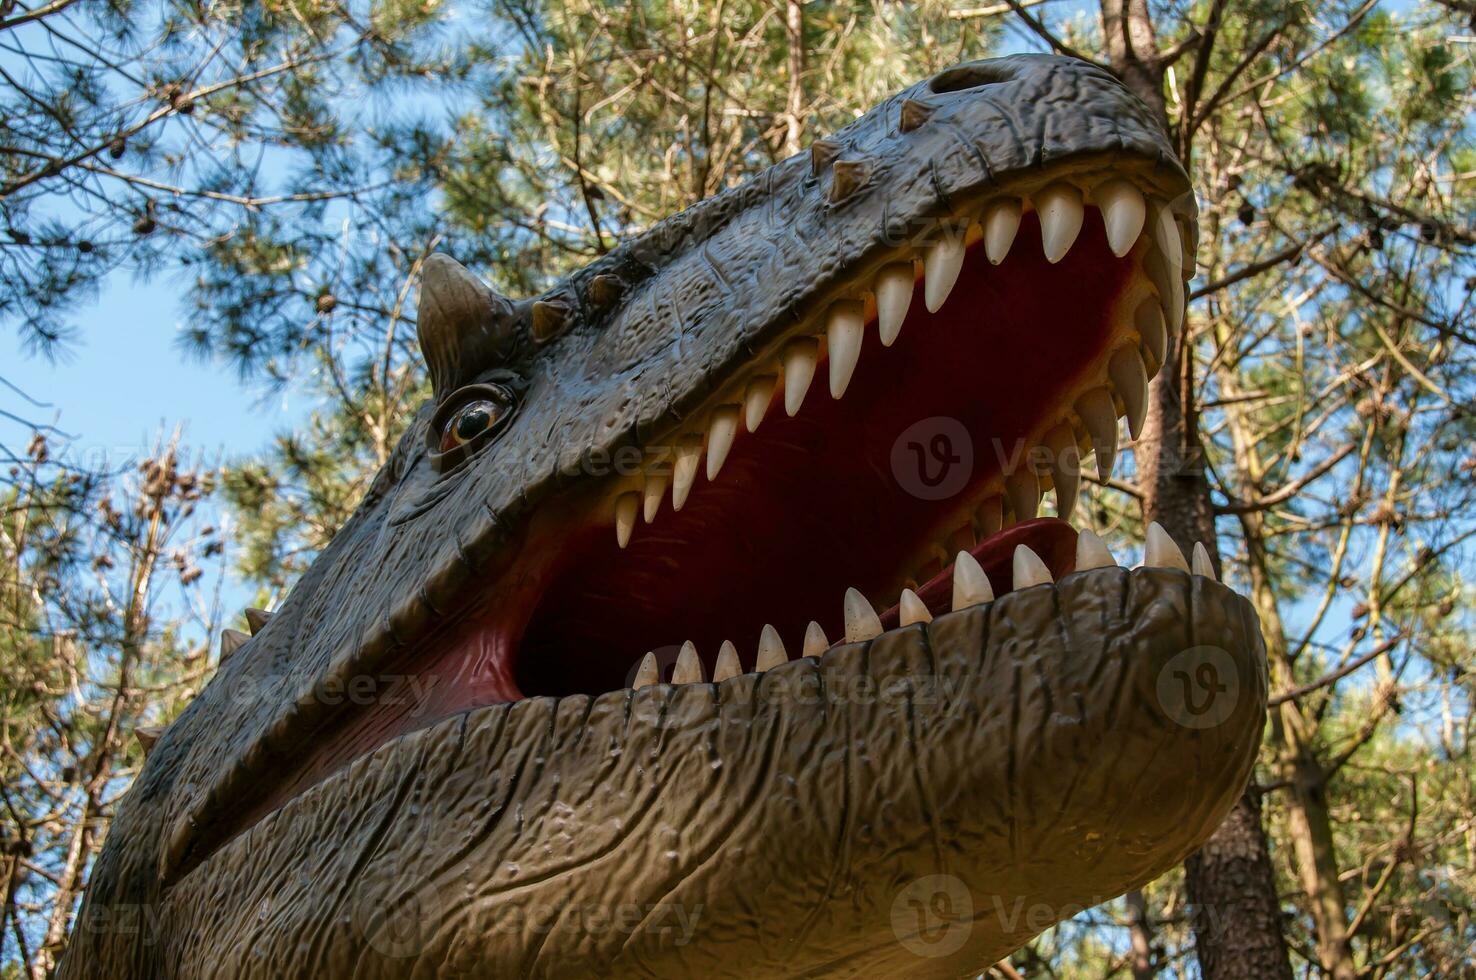 dino parque, dinosaurio tema parque en lourinha, Portugal foto